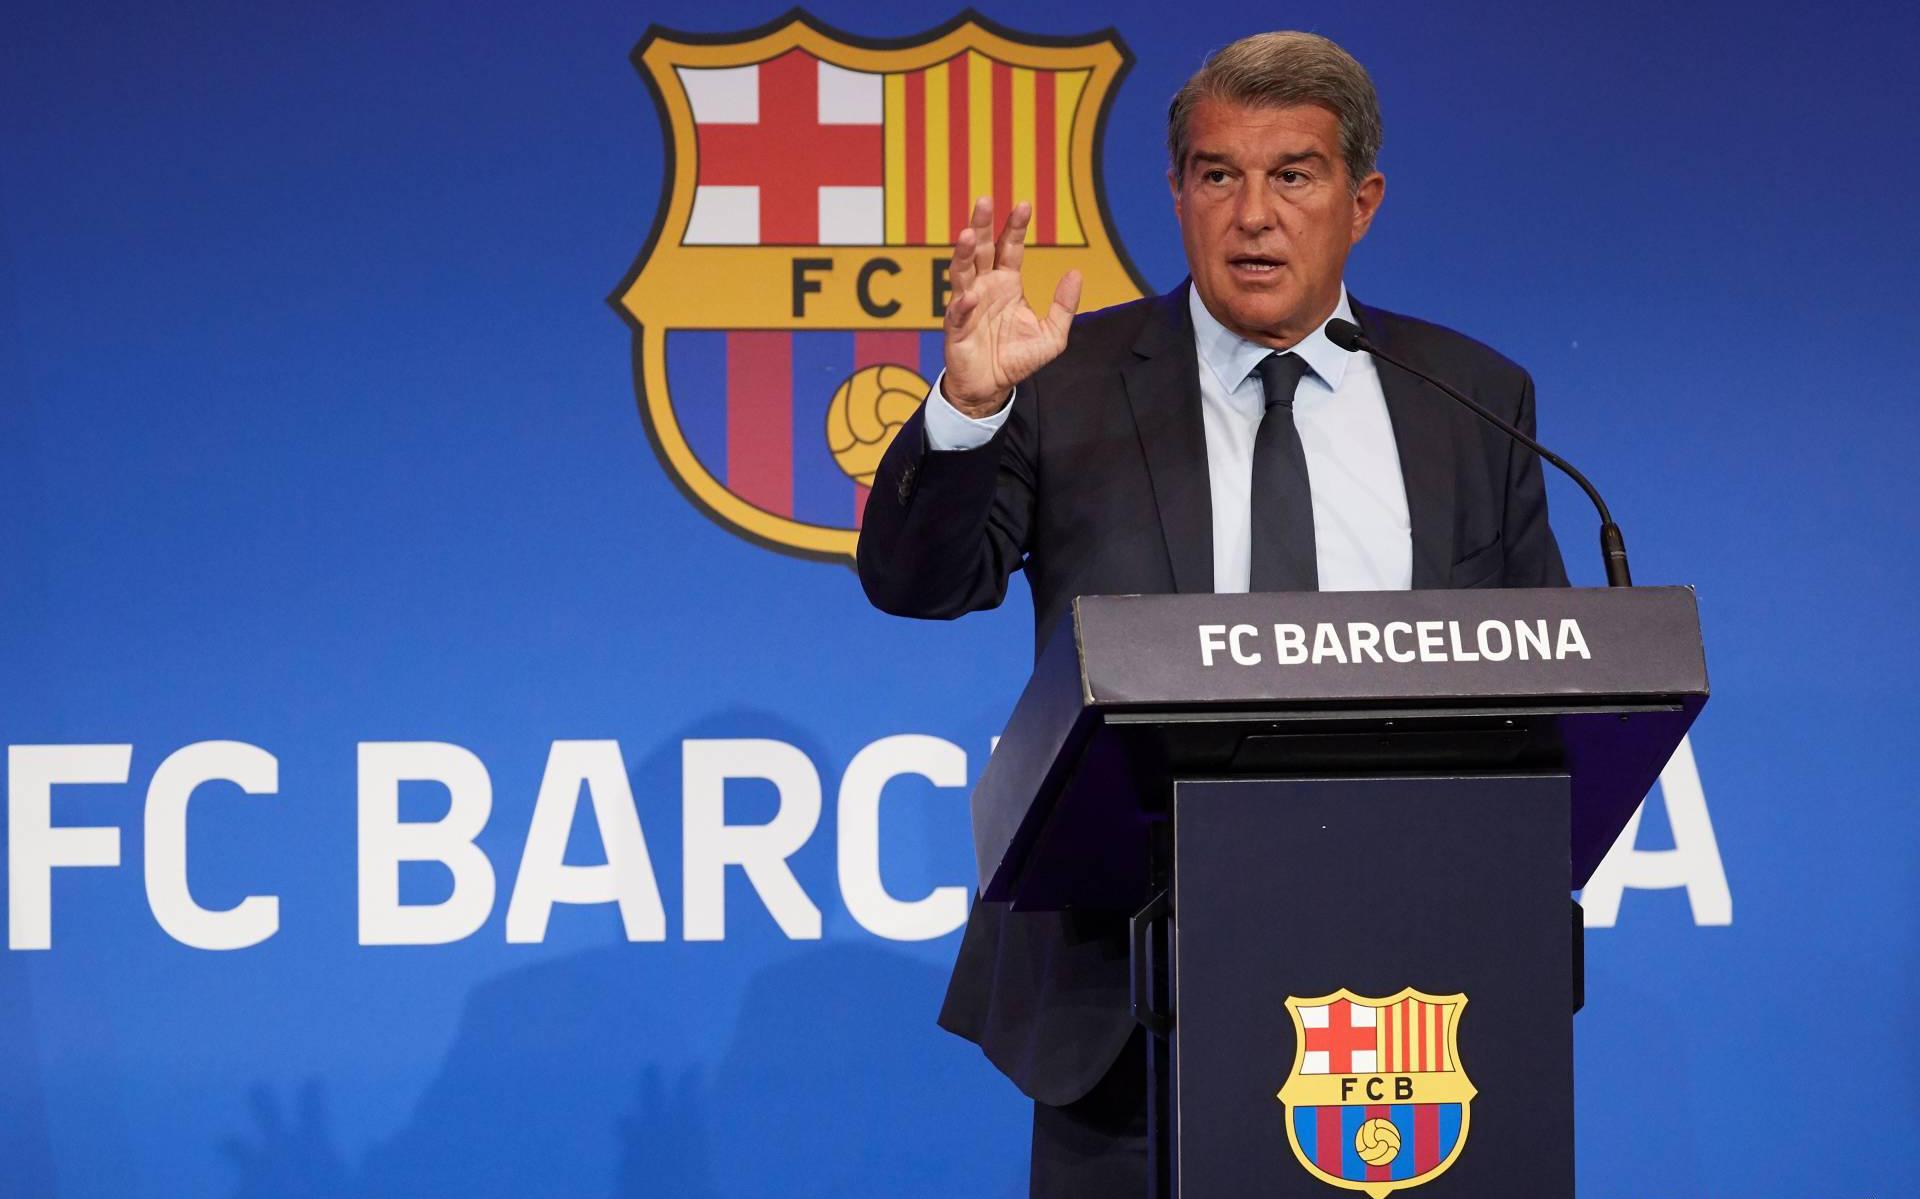 komen namens Latijns Barça positief over toekomst ondanks 451 miljoen verlies - Leeuwarder  Courant